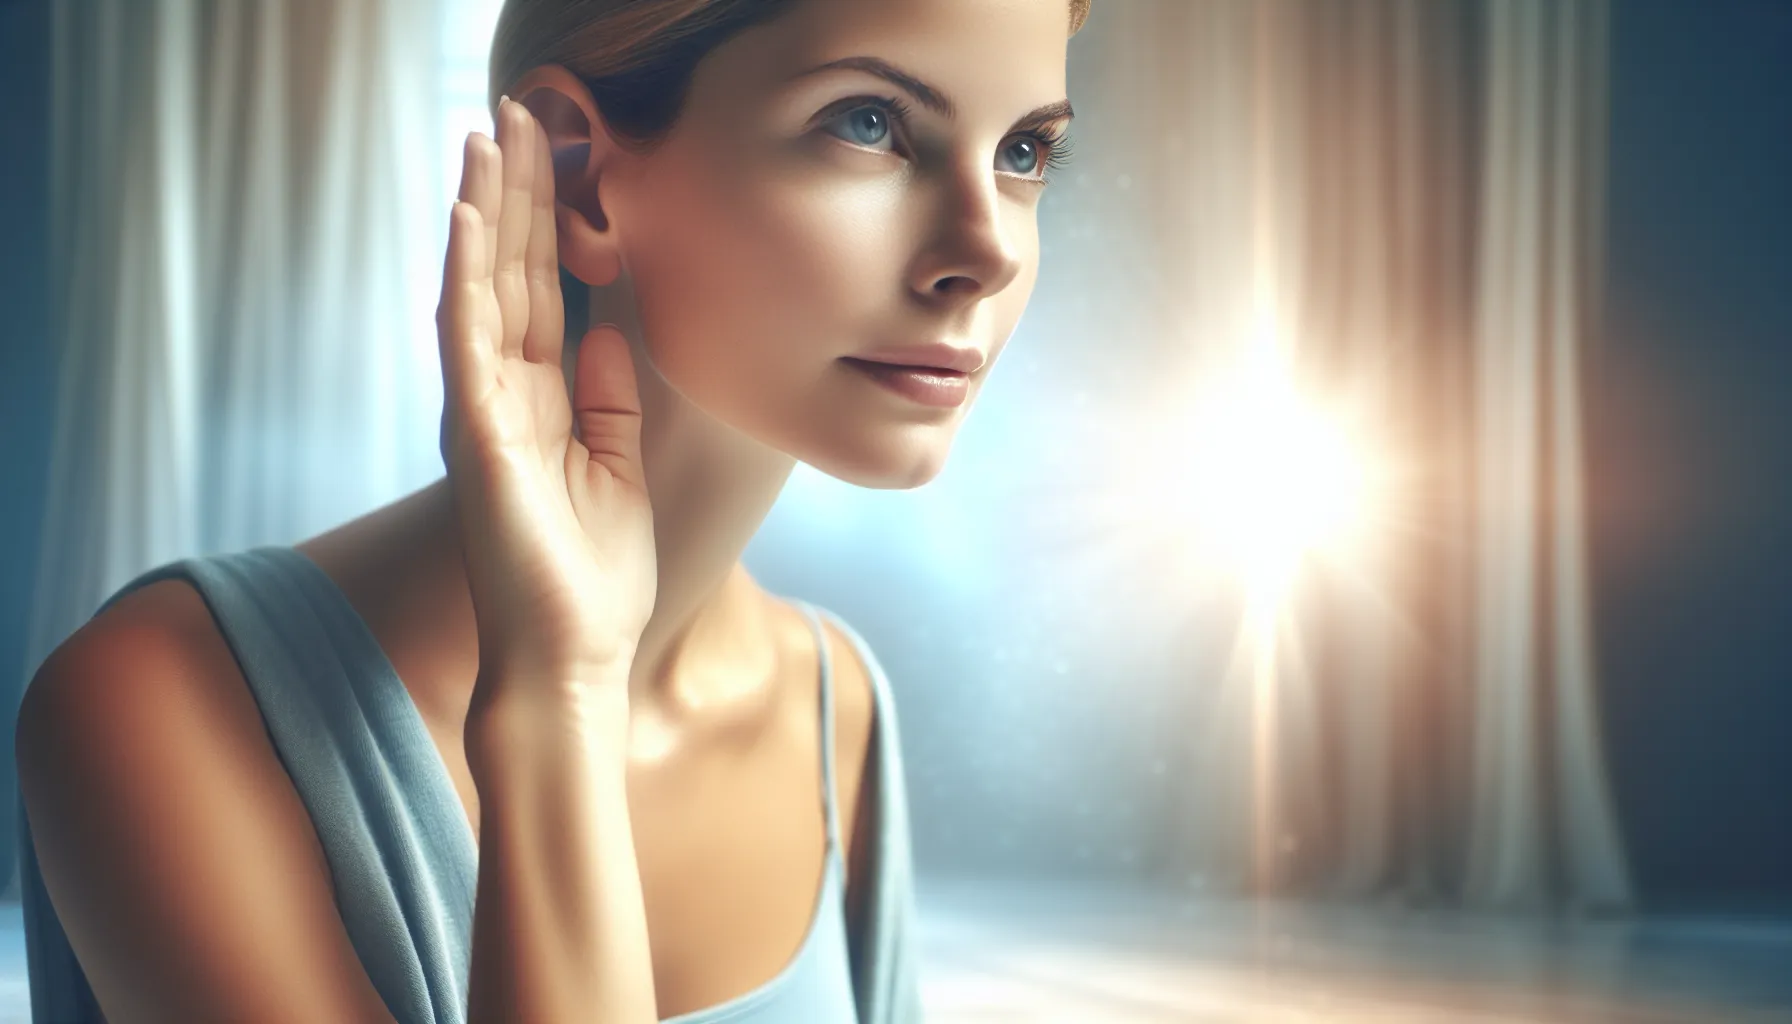 Imagen de una persona con los oídos abiertos, escuchando atentamente con una expresión serena, simbolizando la conexión con la voz de Dios y su guía espiritual.